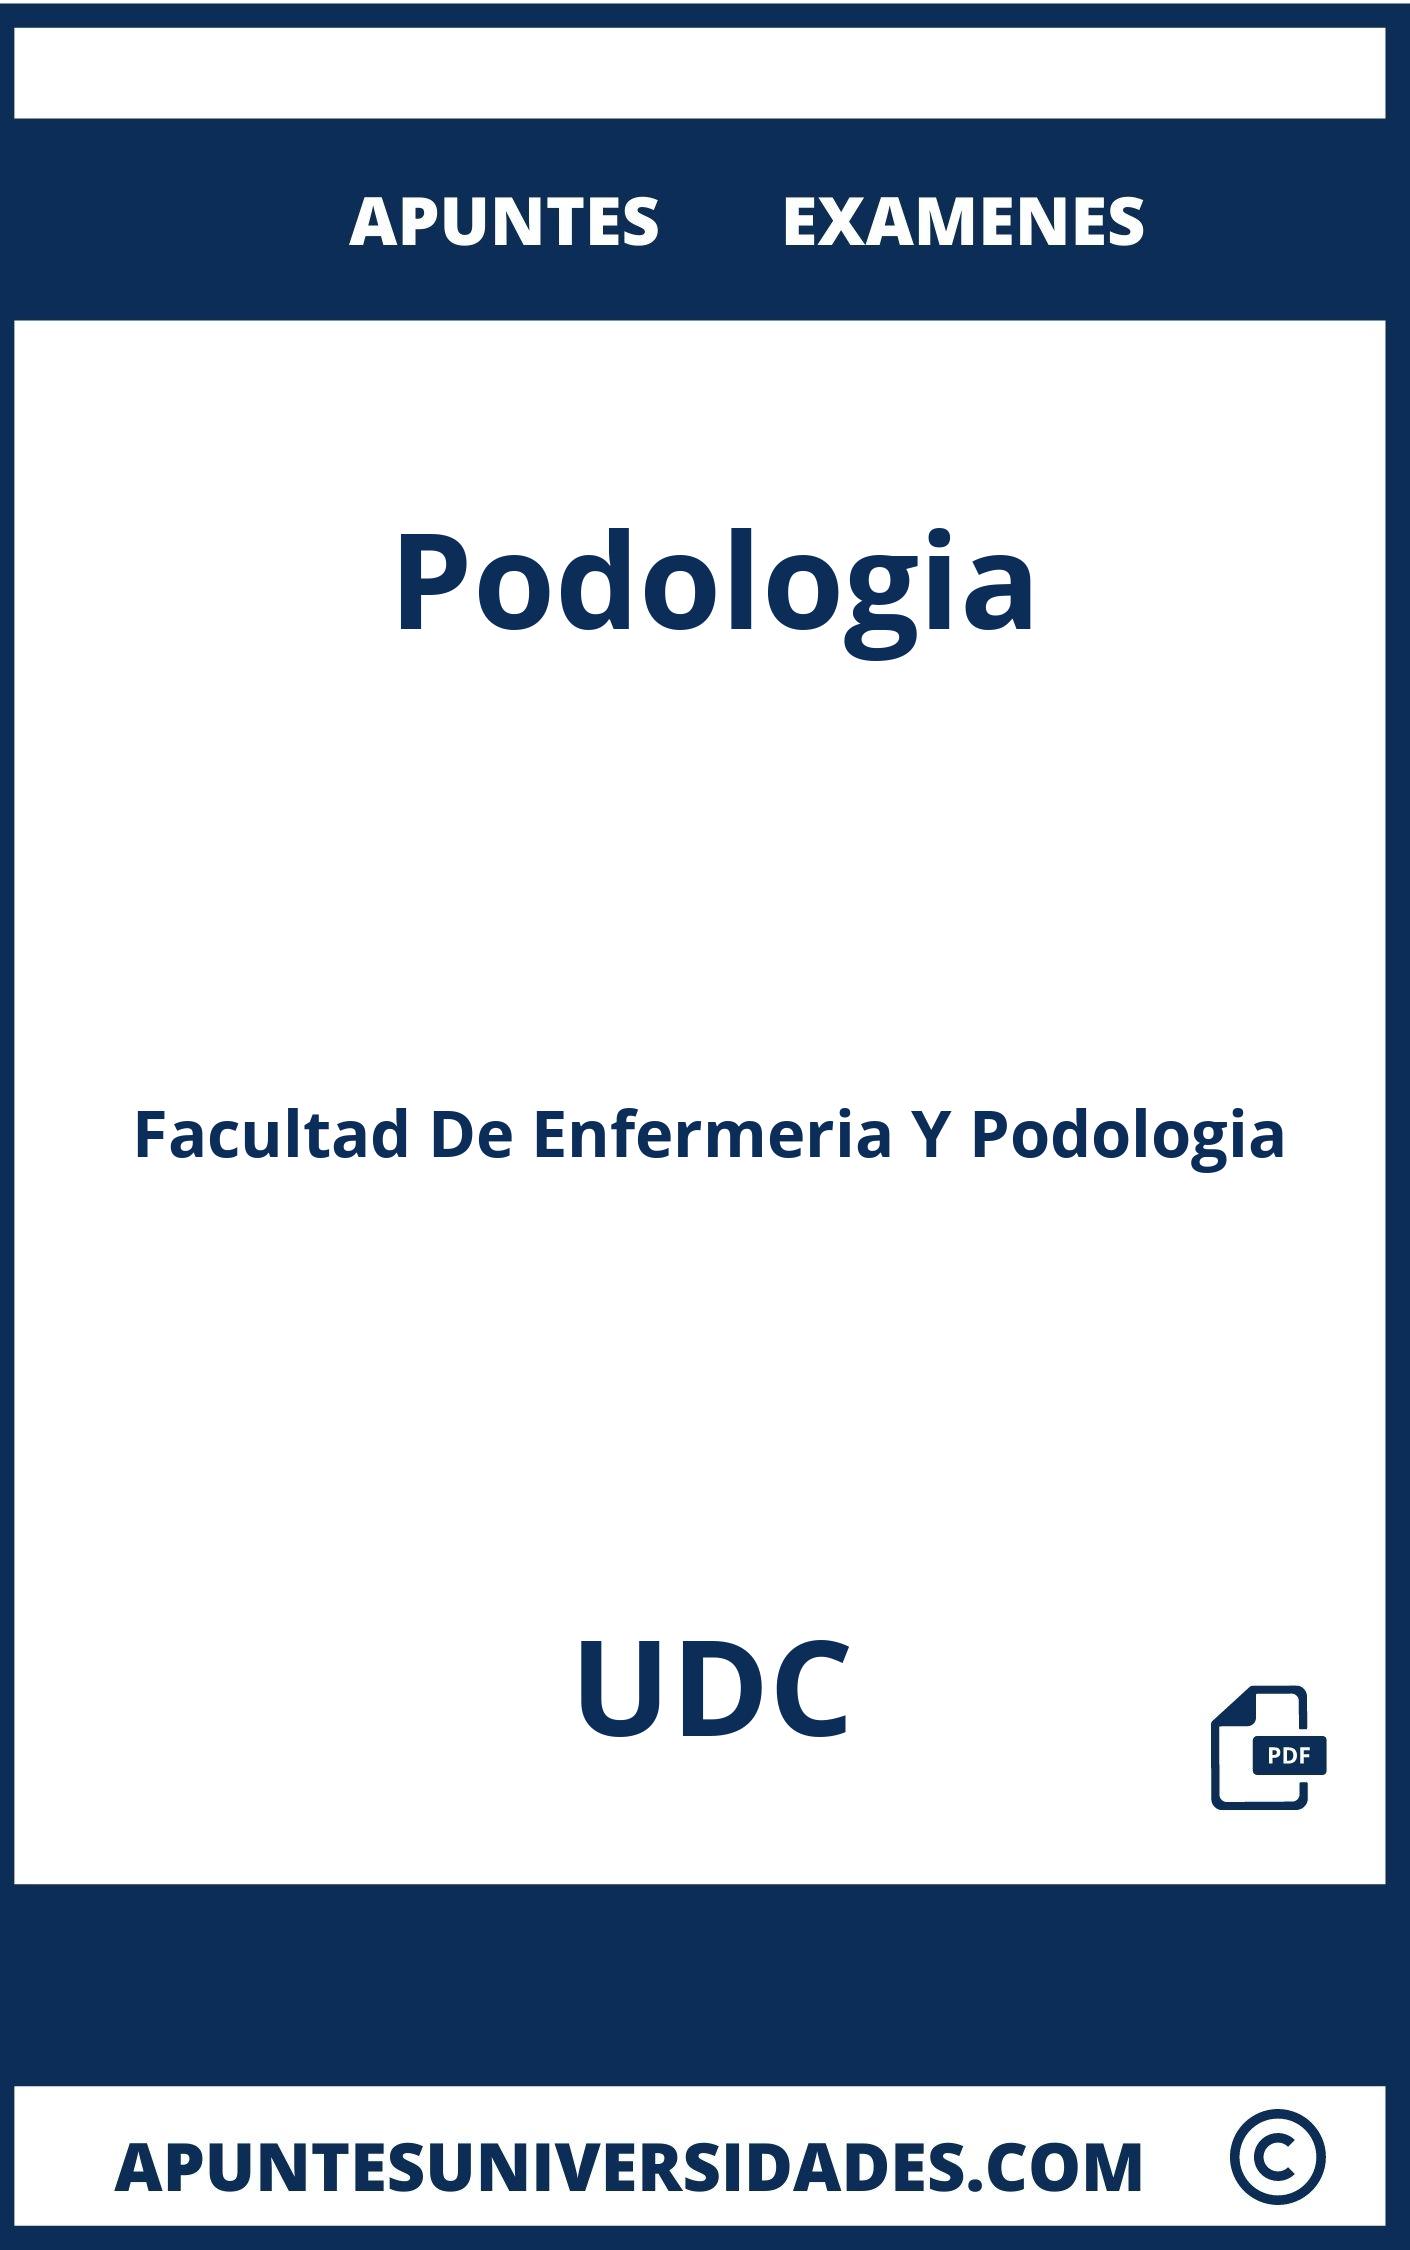 Apuntes Examenes Podologia UDC